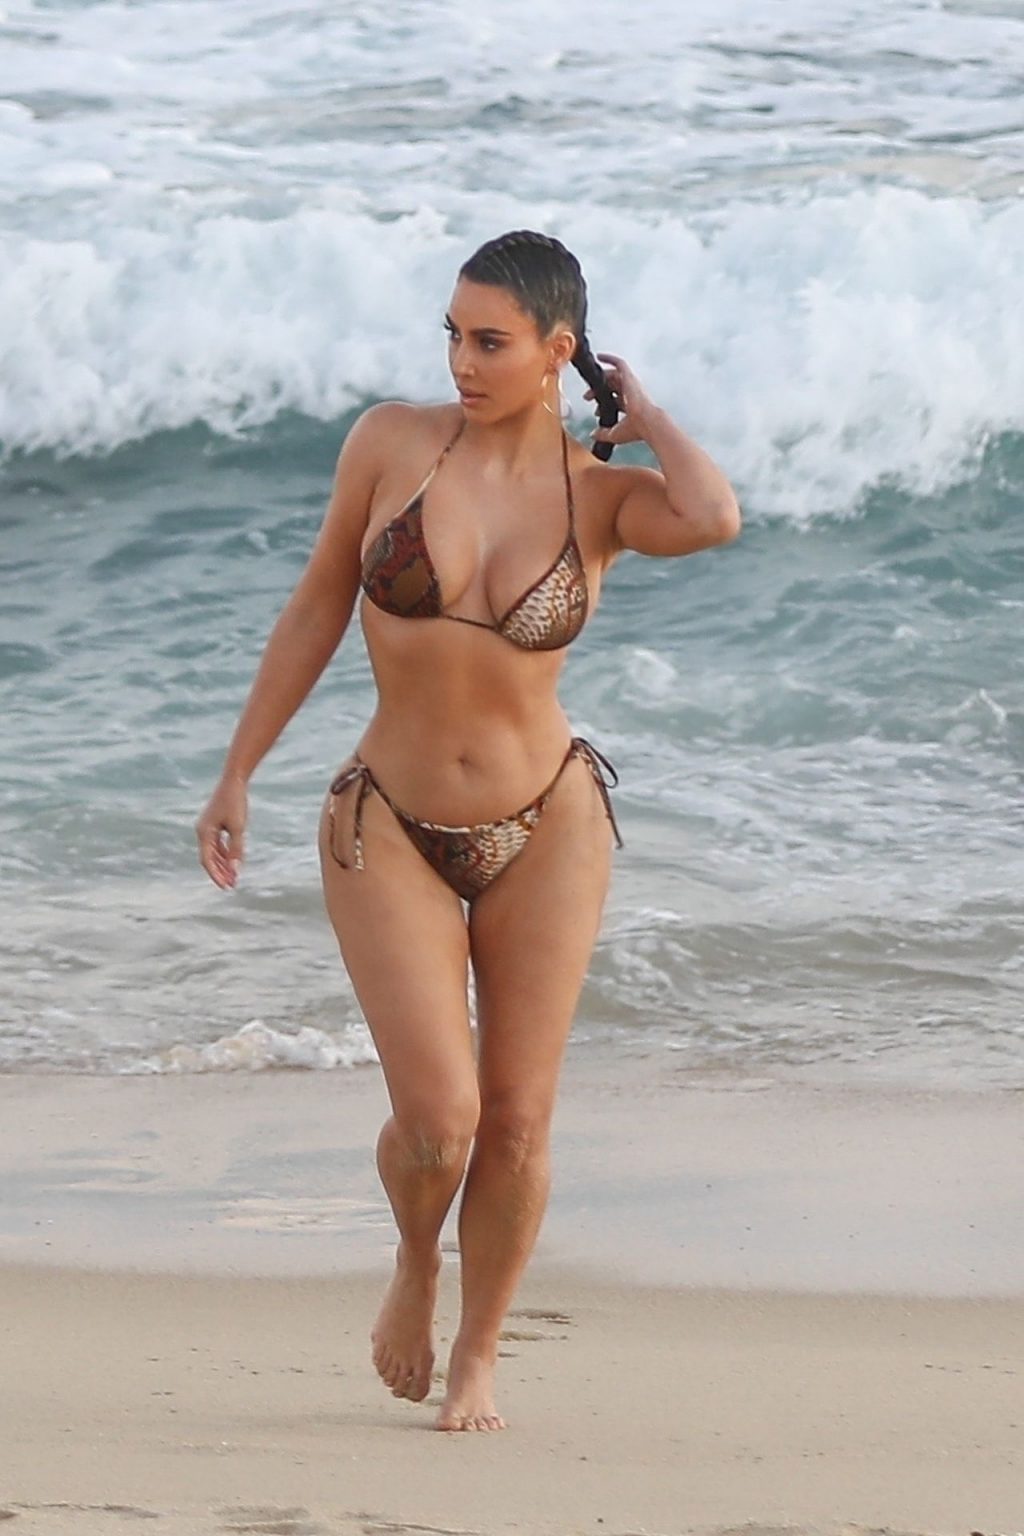 Kim Kardashian Poses in a Sexy Bikini on the Beach in Malibu (20 Photos)